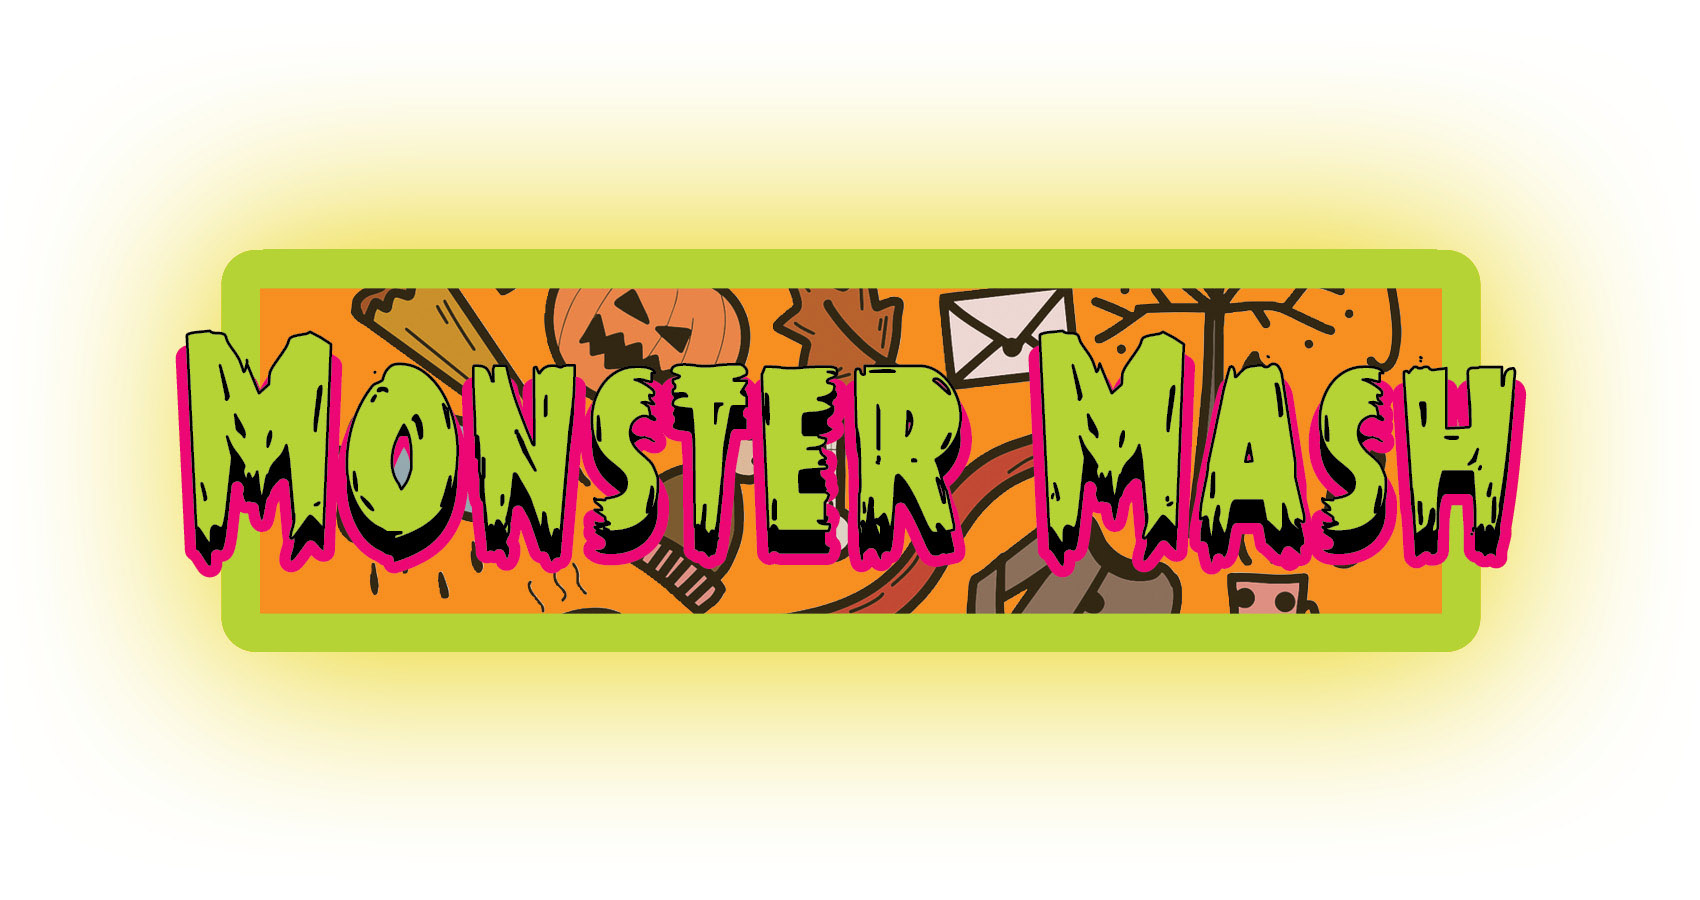 Monster Mash written in bold green cartoon like letters in an orange box.